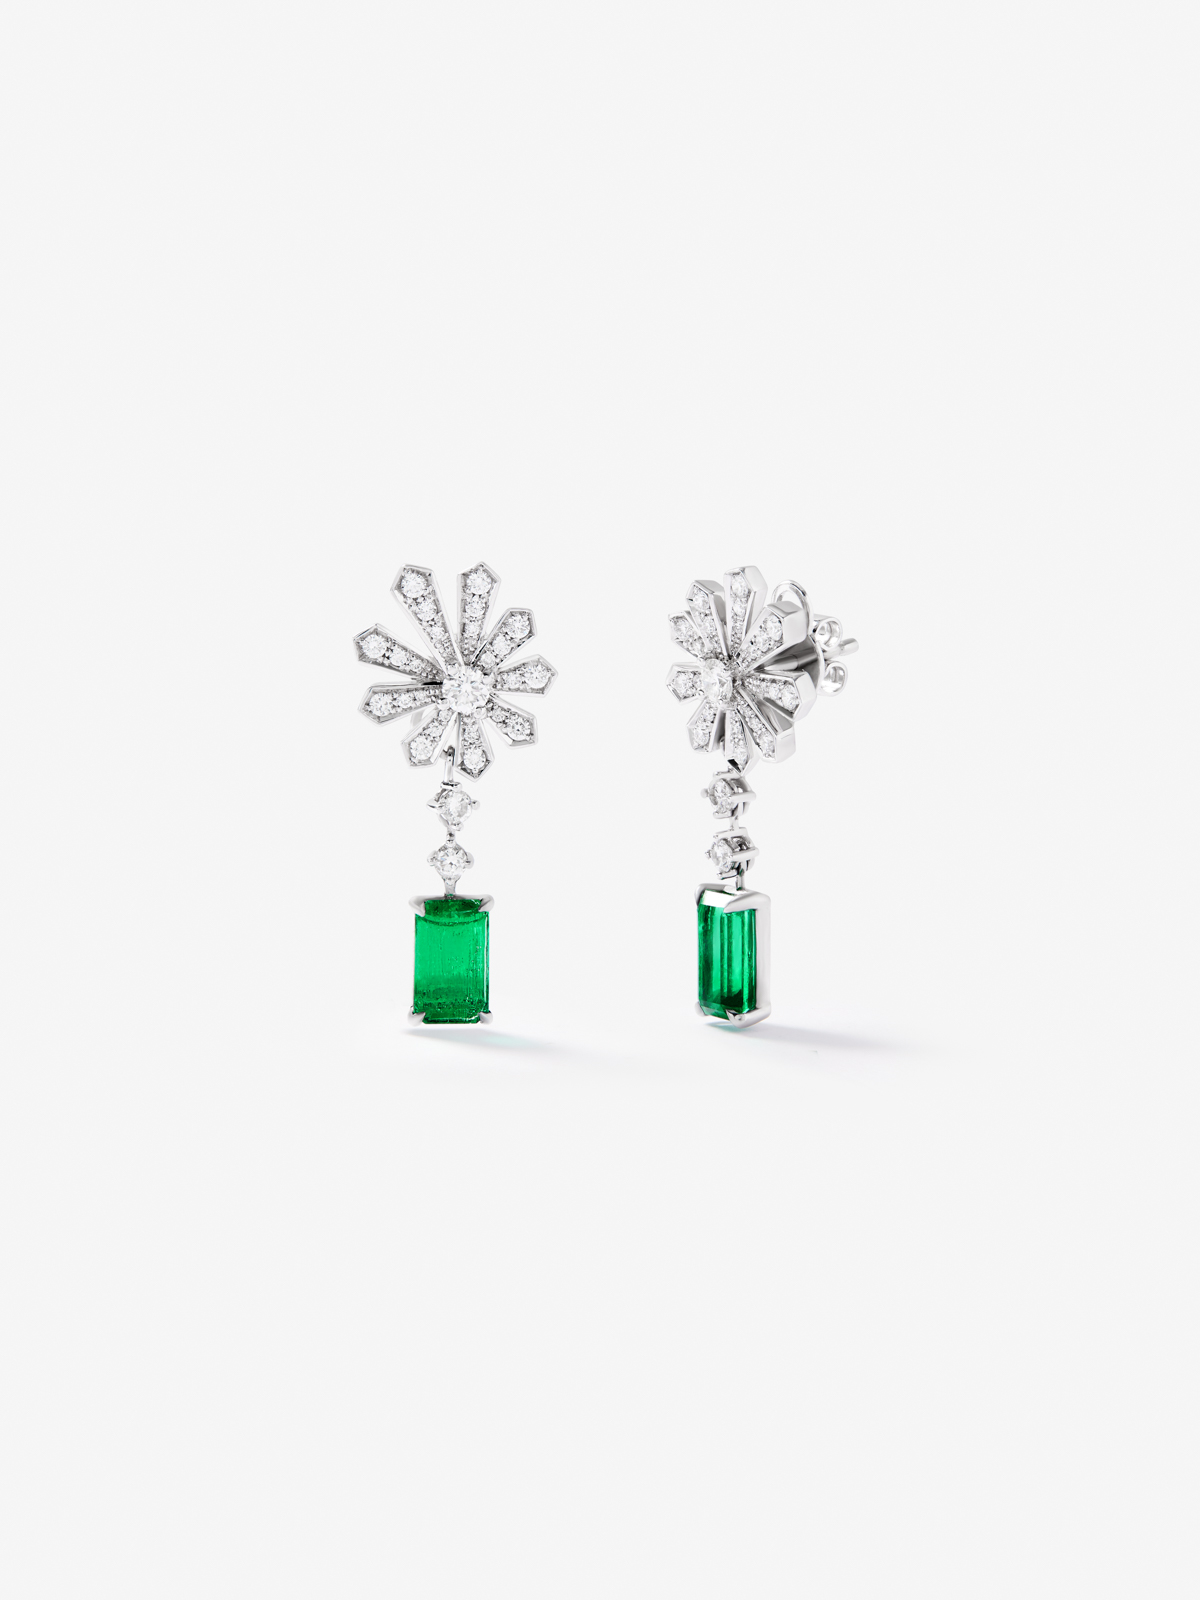 Pendientes de oro blanco de 18K con esmeraldas verdes en talla octogonal de 3,12 cts y diamantes blancos en talla brillante de 0,9 cts